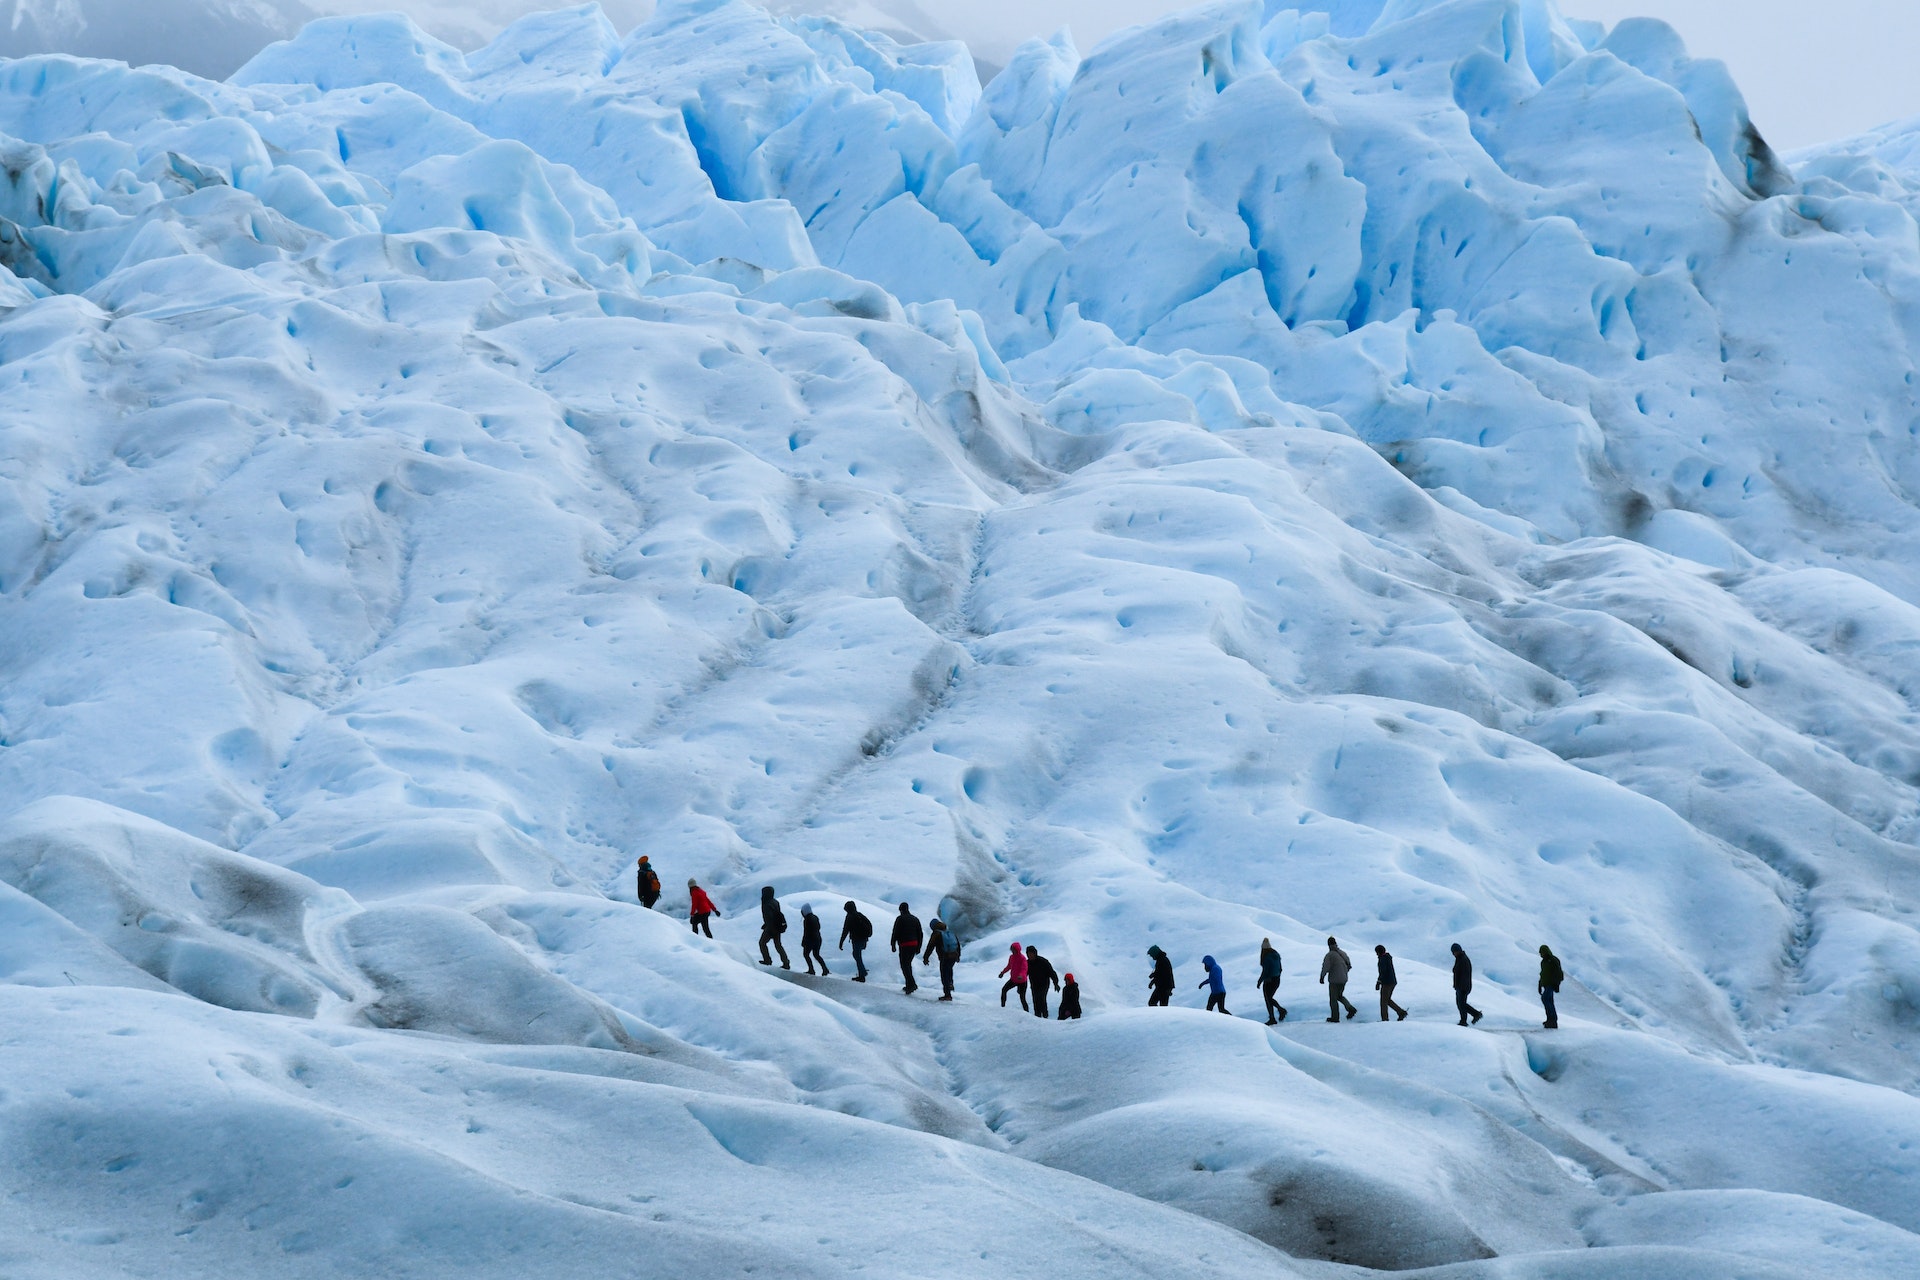 Adventure Tours In Patagonia - Trekking The Torres Del Paine Circuit